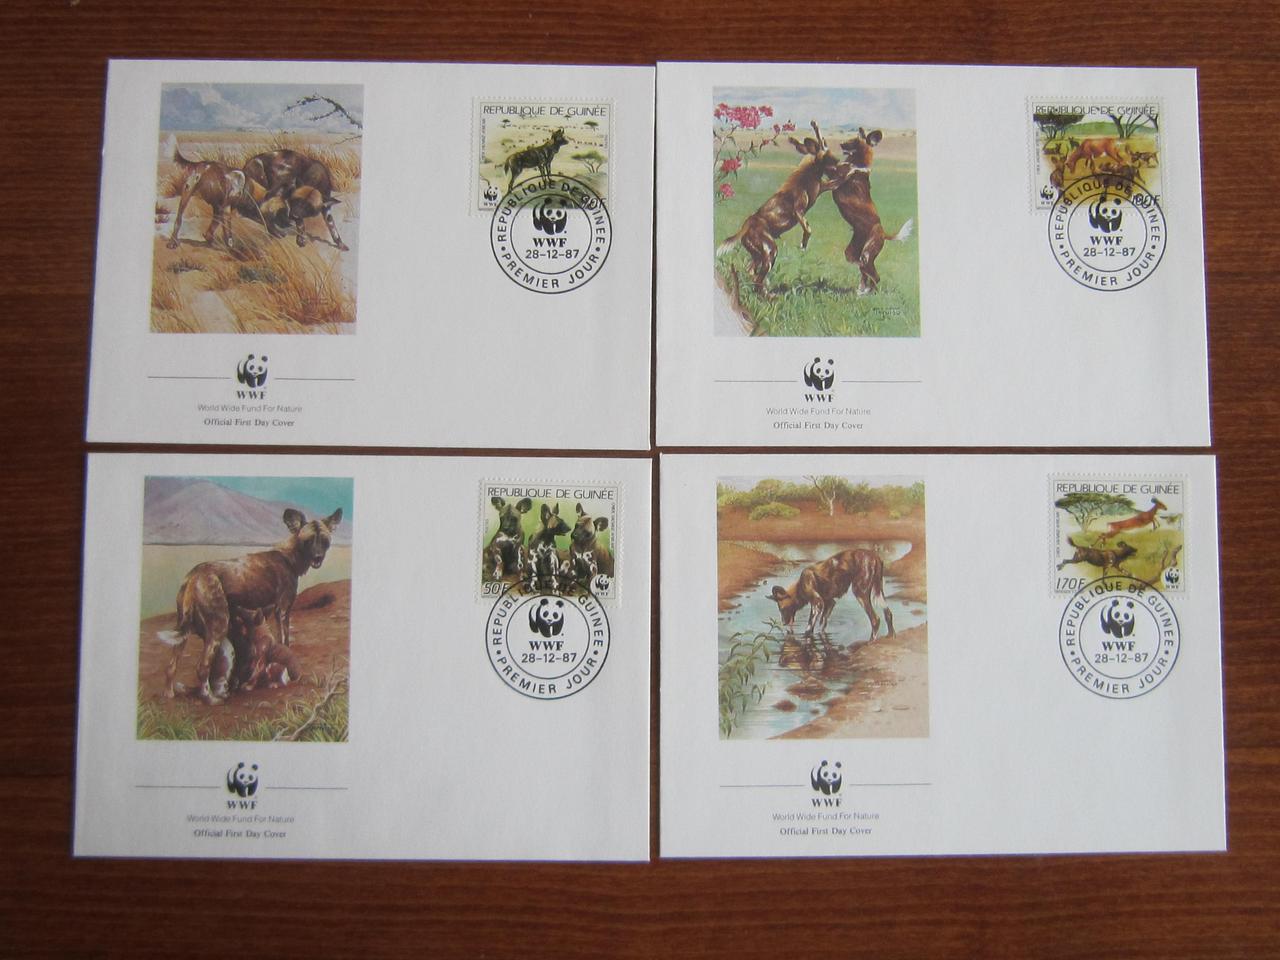 4 ККДІЯ 1987 фауна гієноподібні собаки WWF конверти марки спецгашення КЦ 15 $